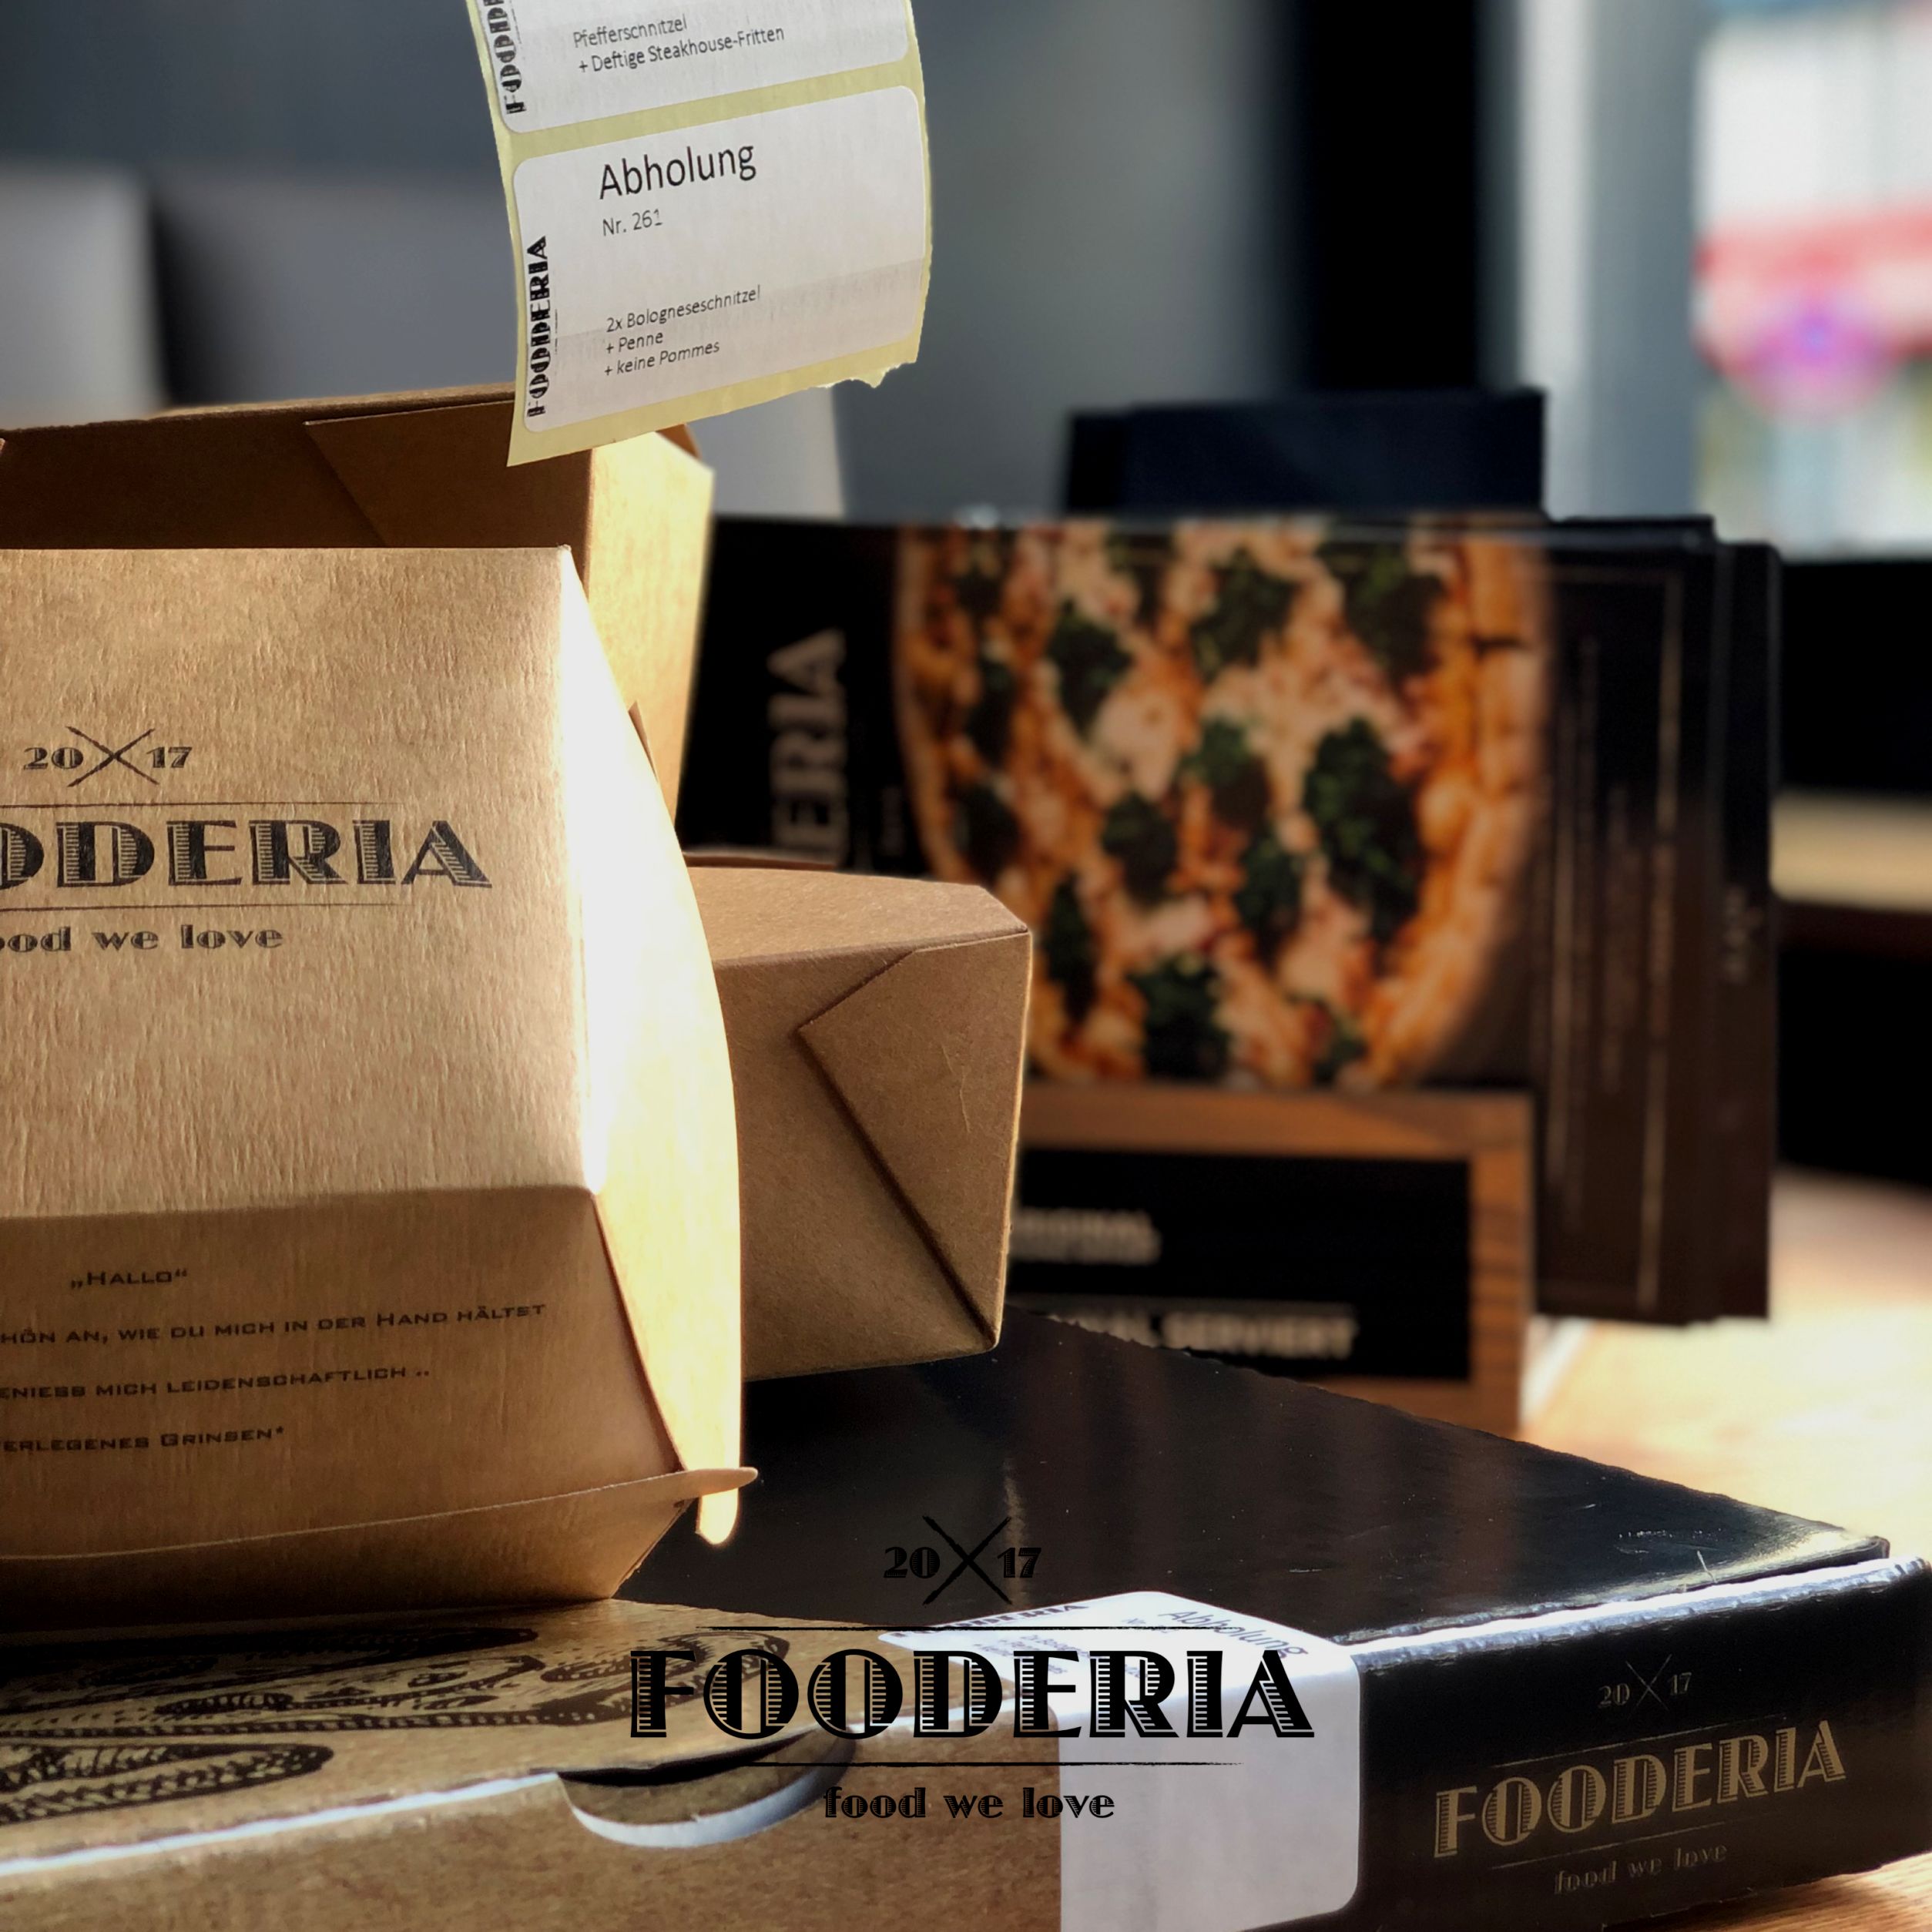 Fooderia - food we love